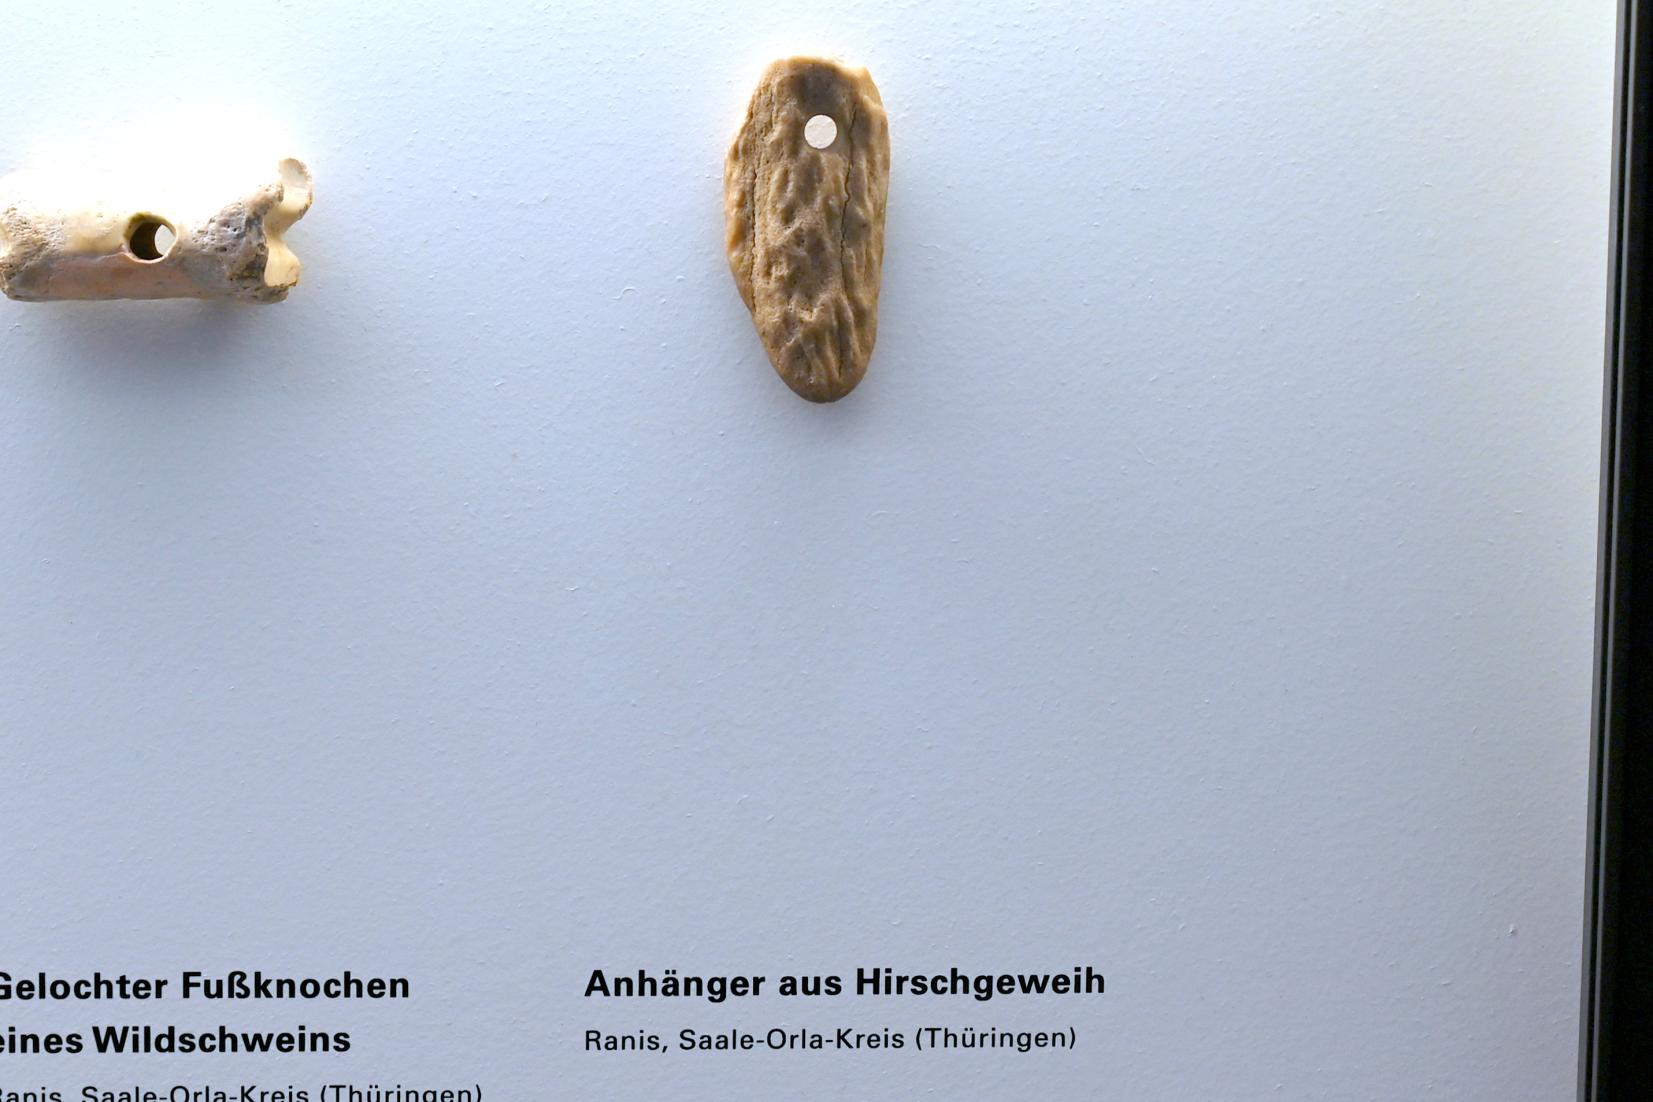 Anhänger aus Hirschgeweih, Mesolithikum, 9500 - 5500 v. Chr.